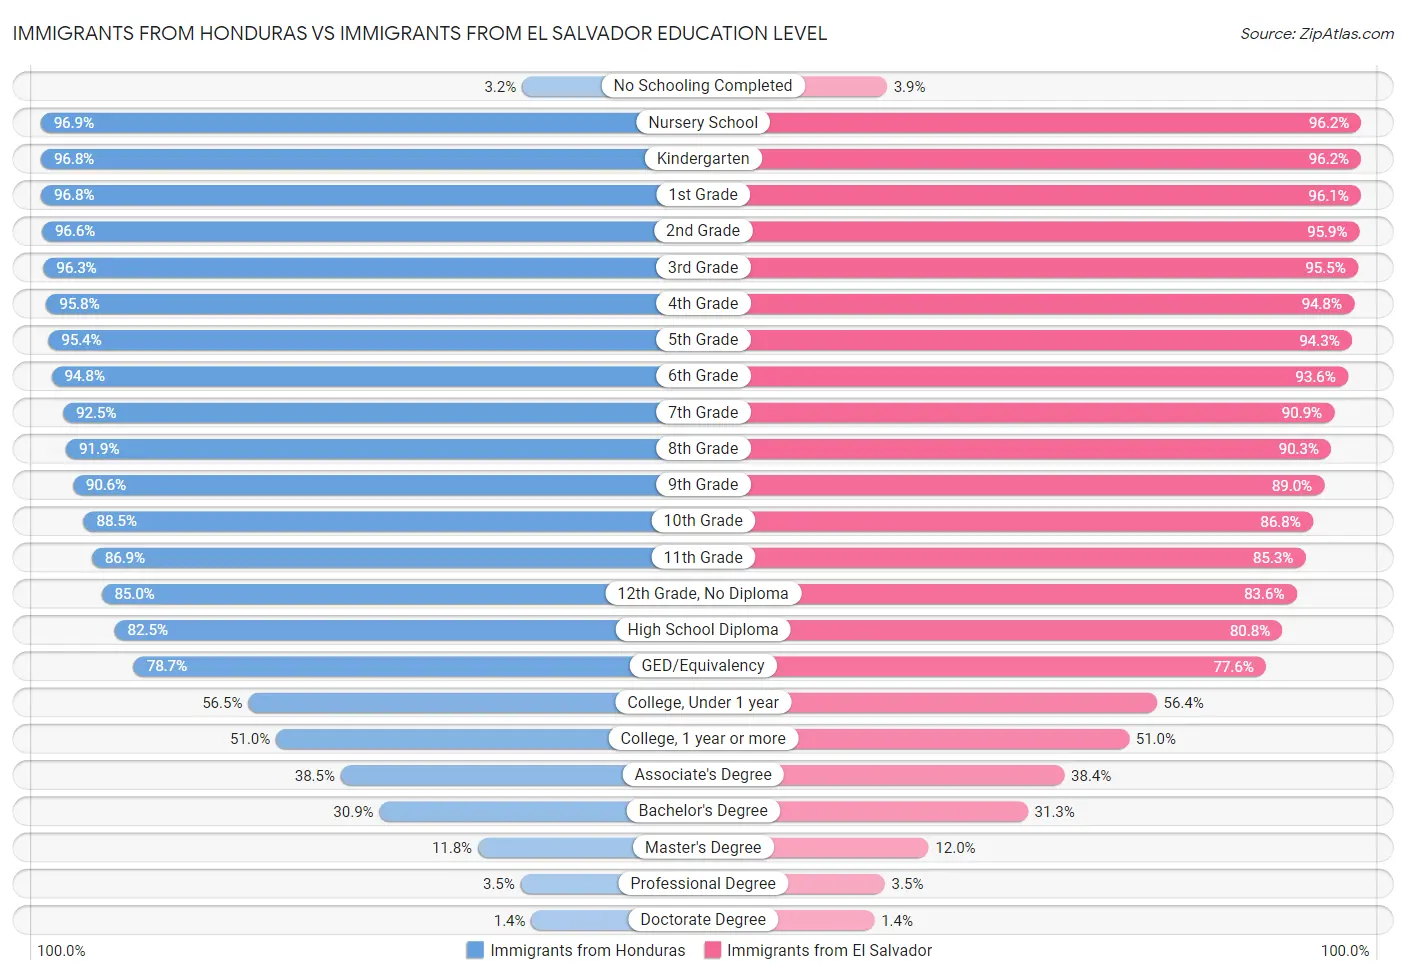 Immigrants from Honduras vs Immigrants from El Salvador Education Level